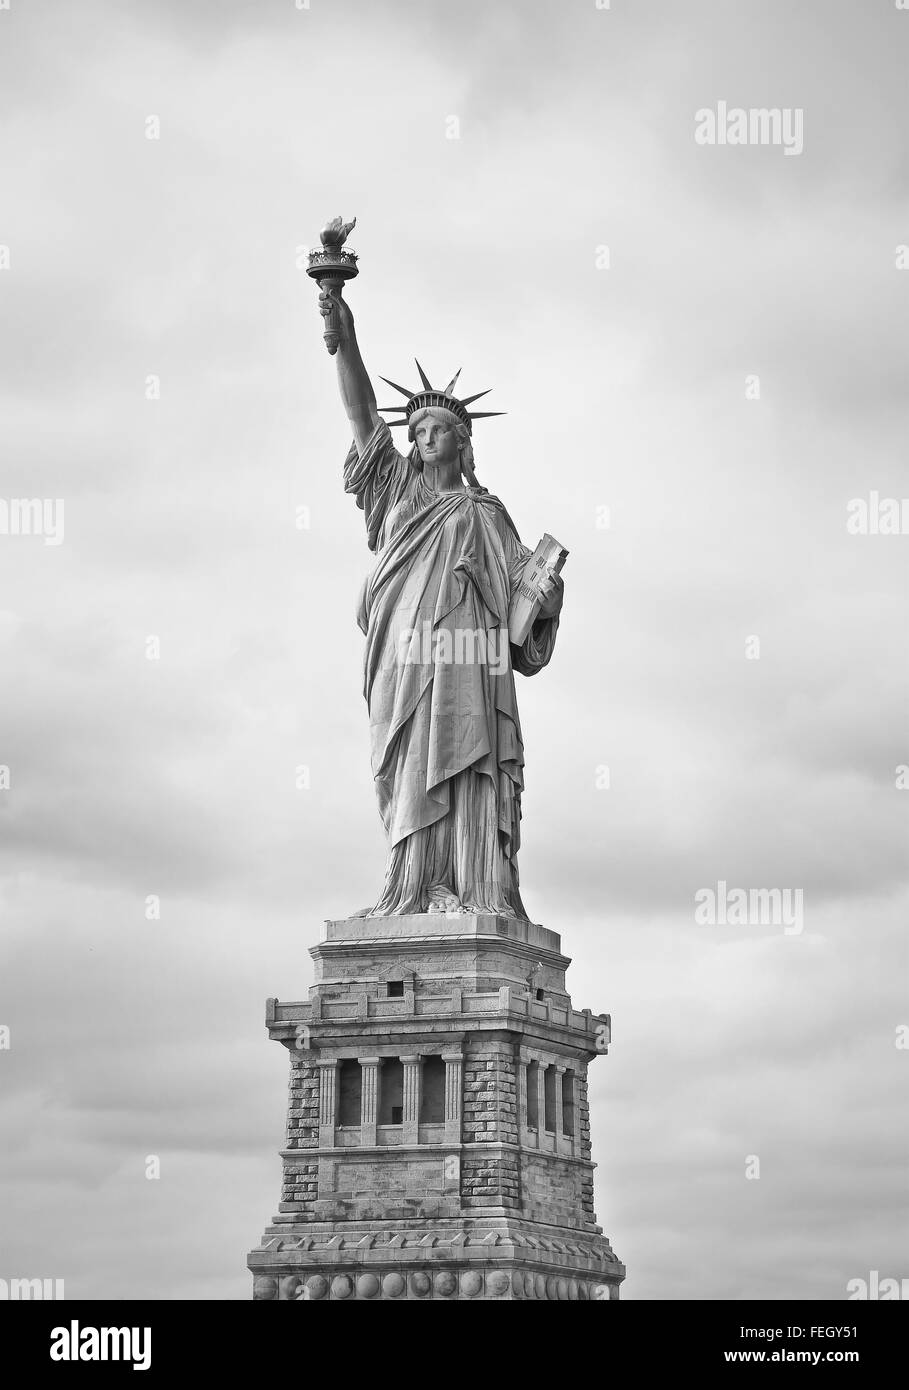 Statua della libertà nell'isola della libertà Foto e Immagini Stock in  Bianco e Nero - Pagina 2 - Alamy